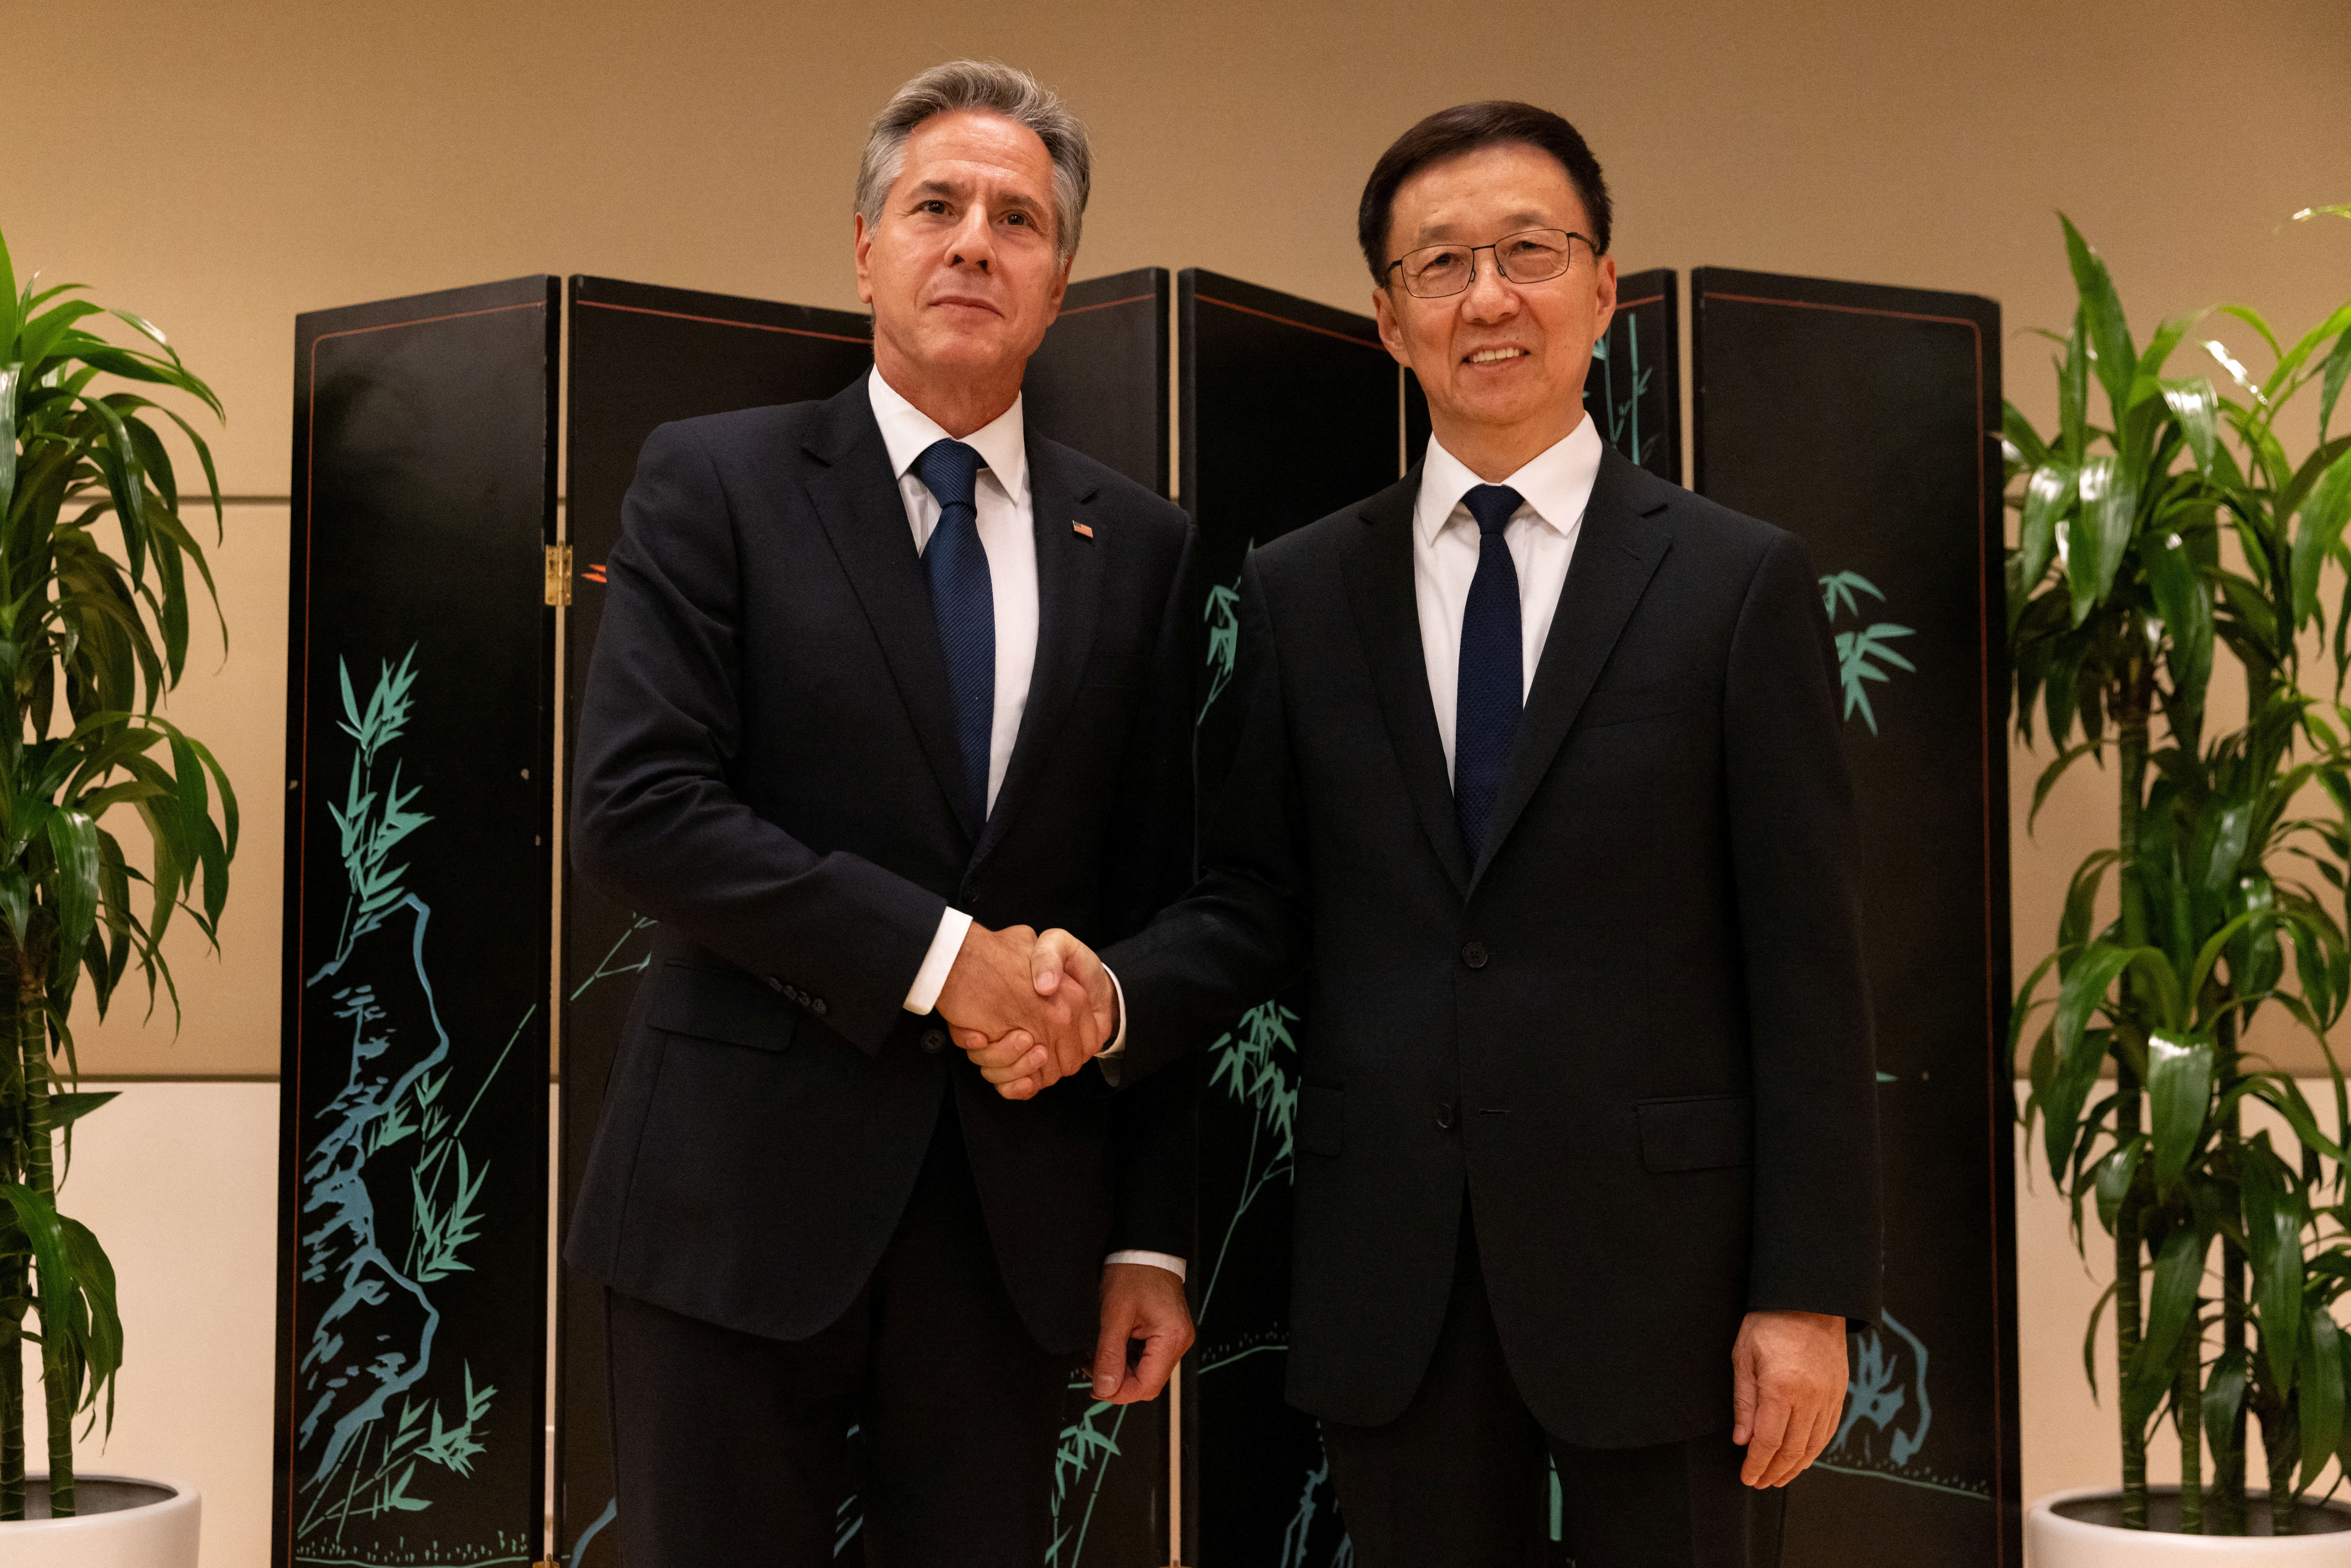 Ο κορυφαίος διπλωμάτης των ΗΠΑ Μπλίνκεν συναντά τον Κινέζο αντιπρόεδρο Χαν στα Ηνωμένα Έθνη εν μέσω τεταμένων σχέσεων